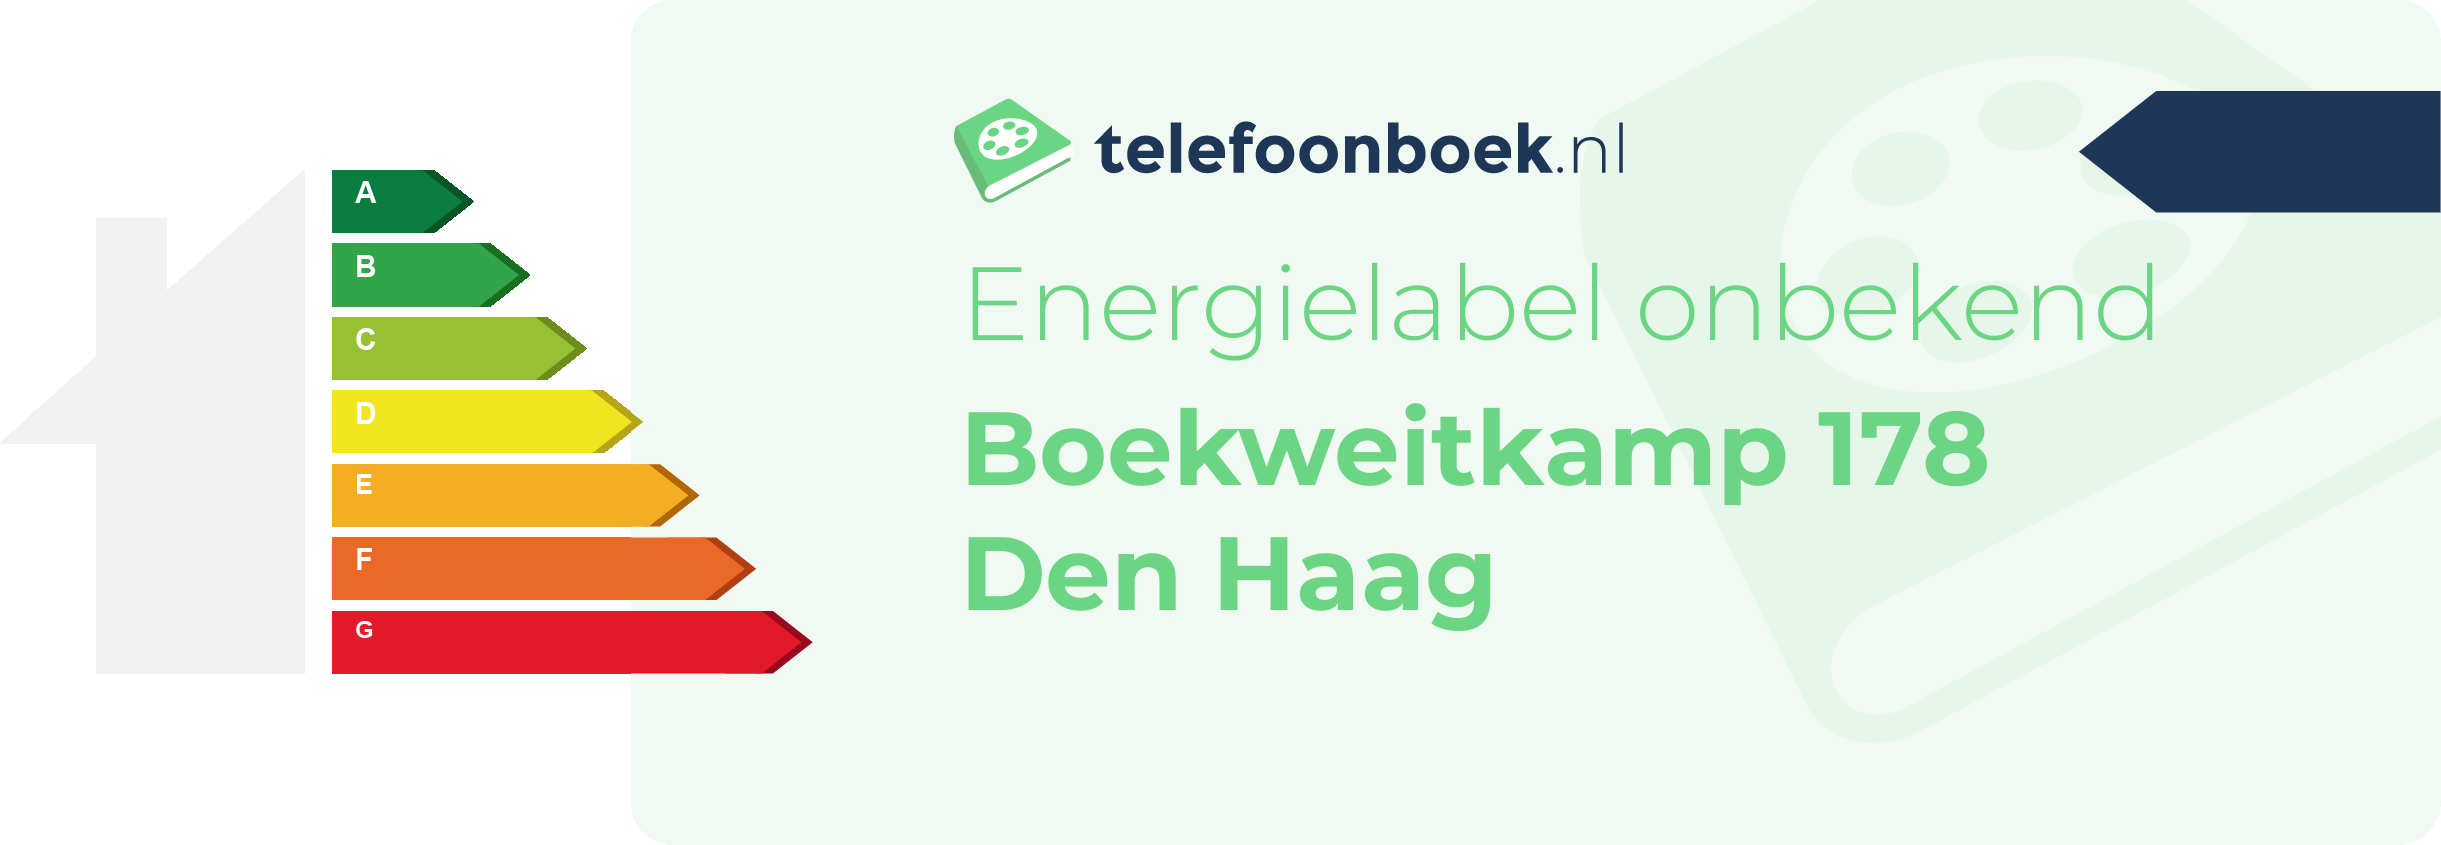 Energielabel Boekweitkamp 178 Den Haag